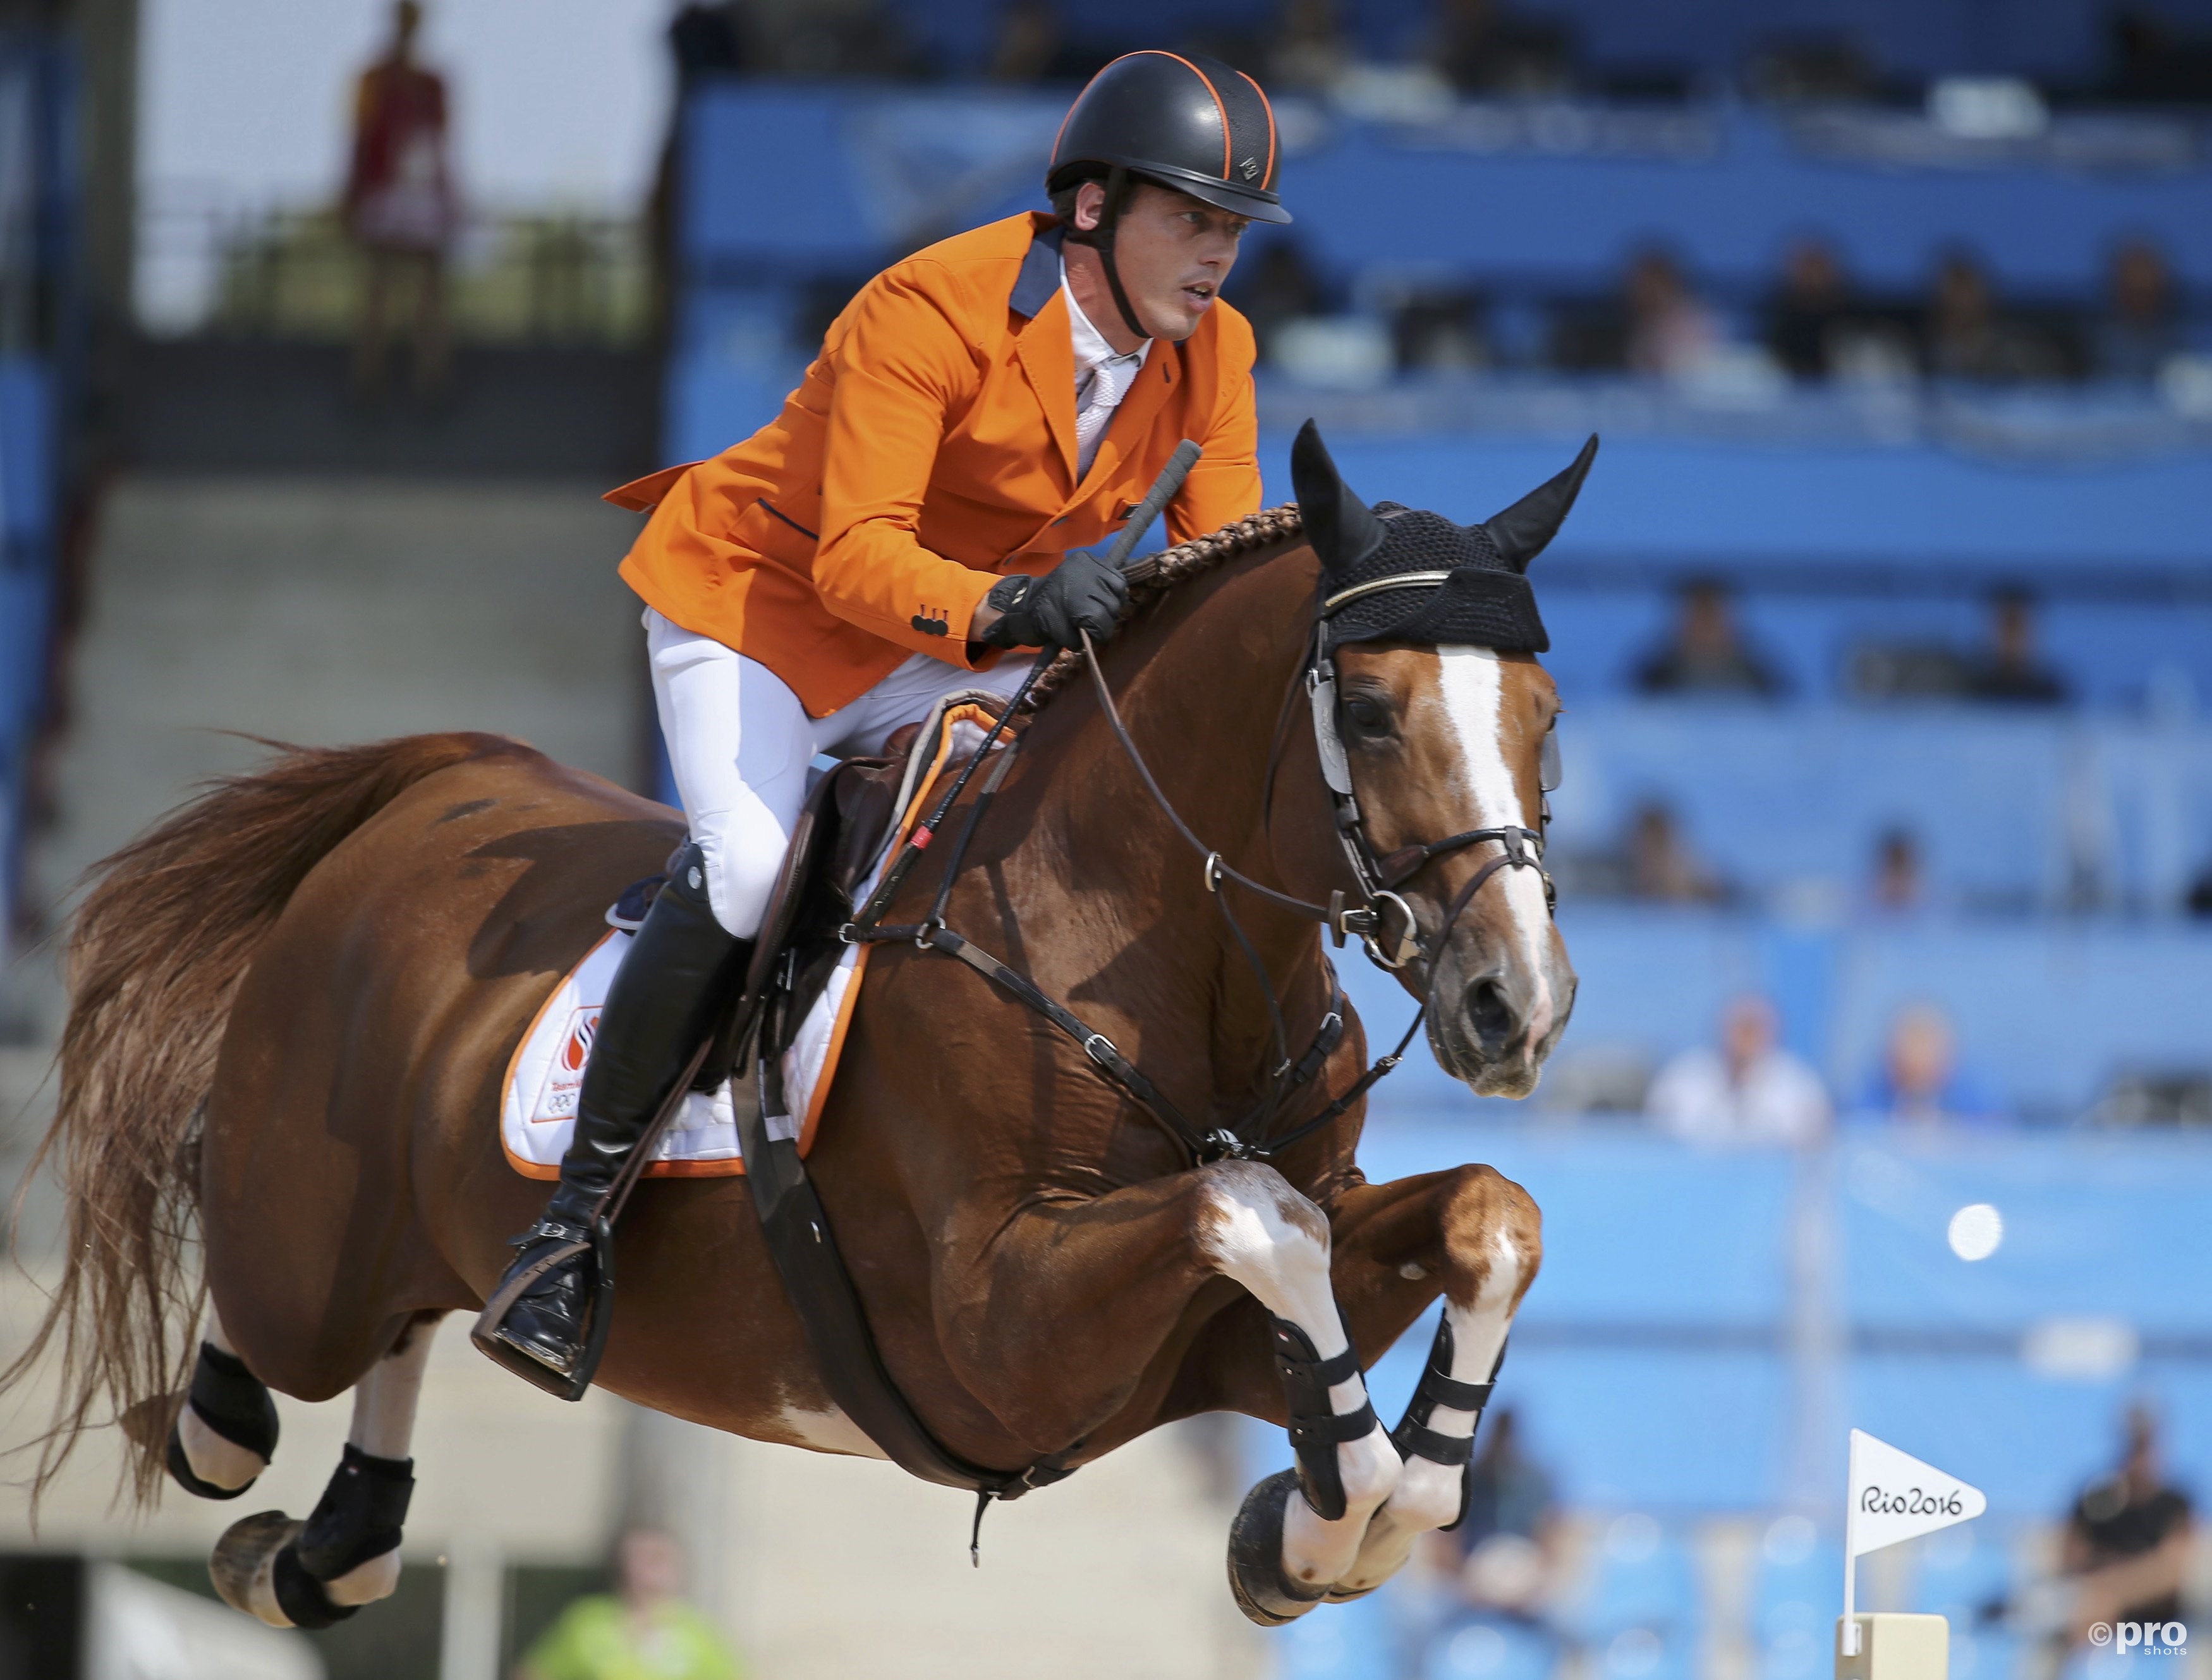 Harrie Smolders redt Nederlandse eer op EK paardensport. (PRO SHOTS/Action Images)